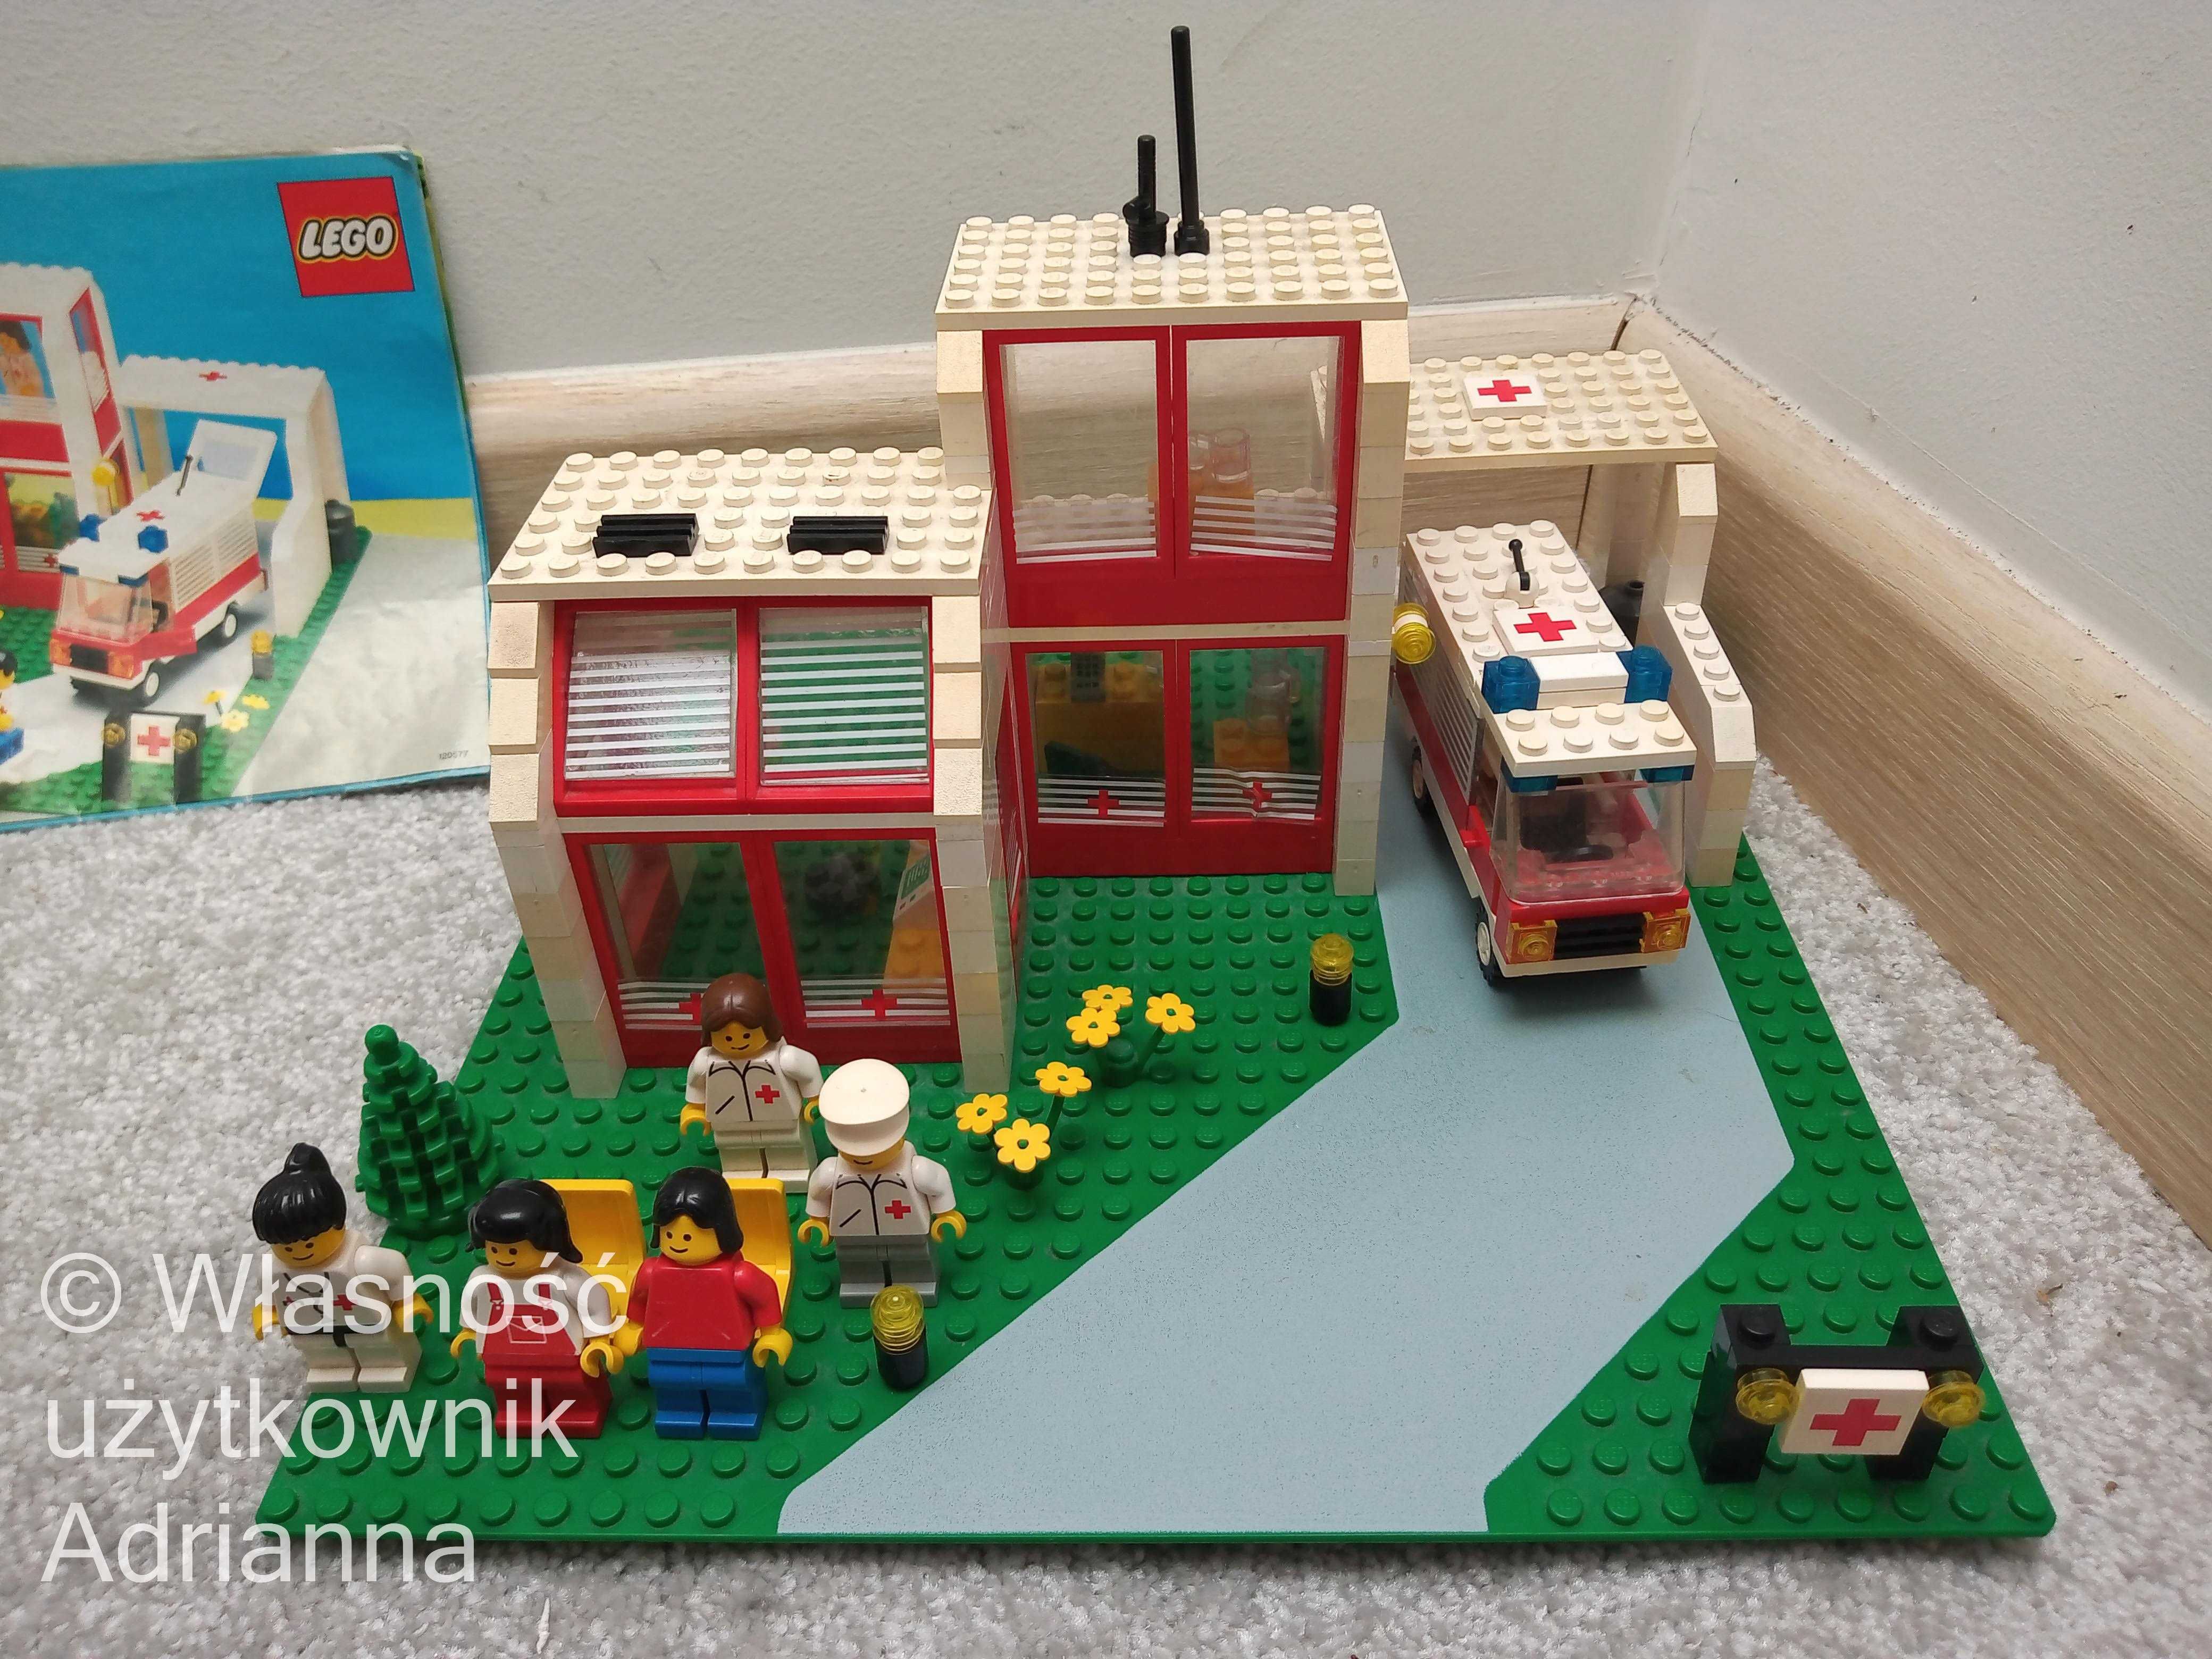 Lego 6380 Szpital (Emergency Treatment Center)